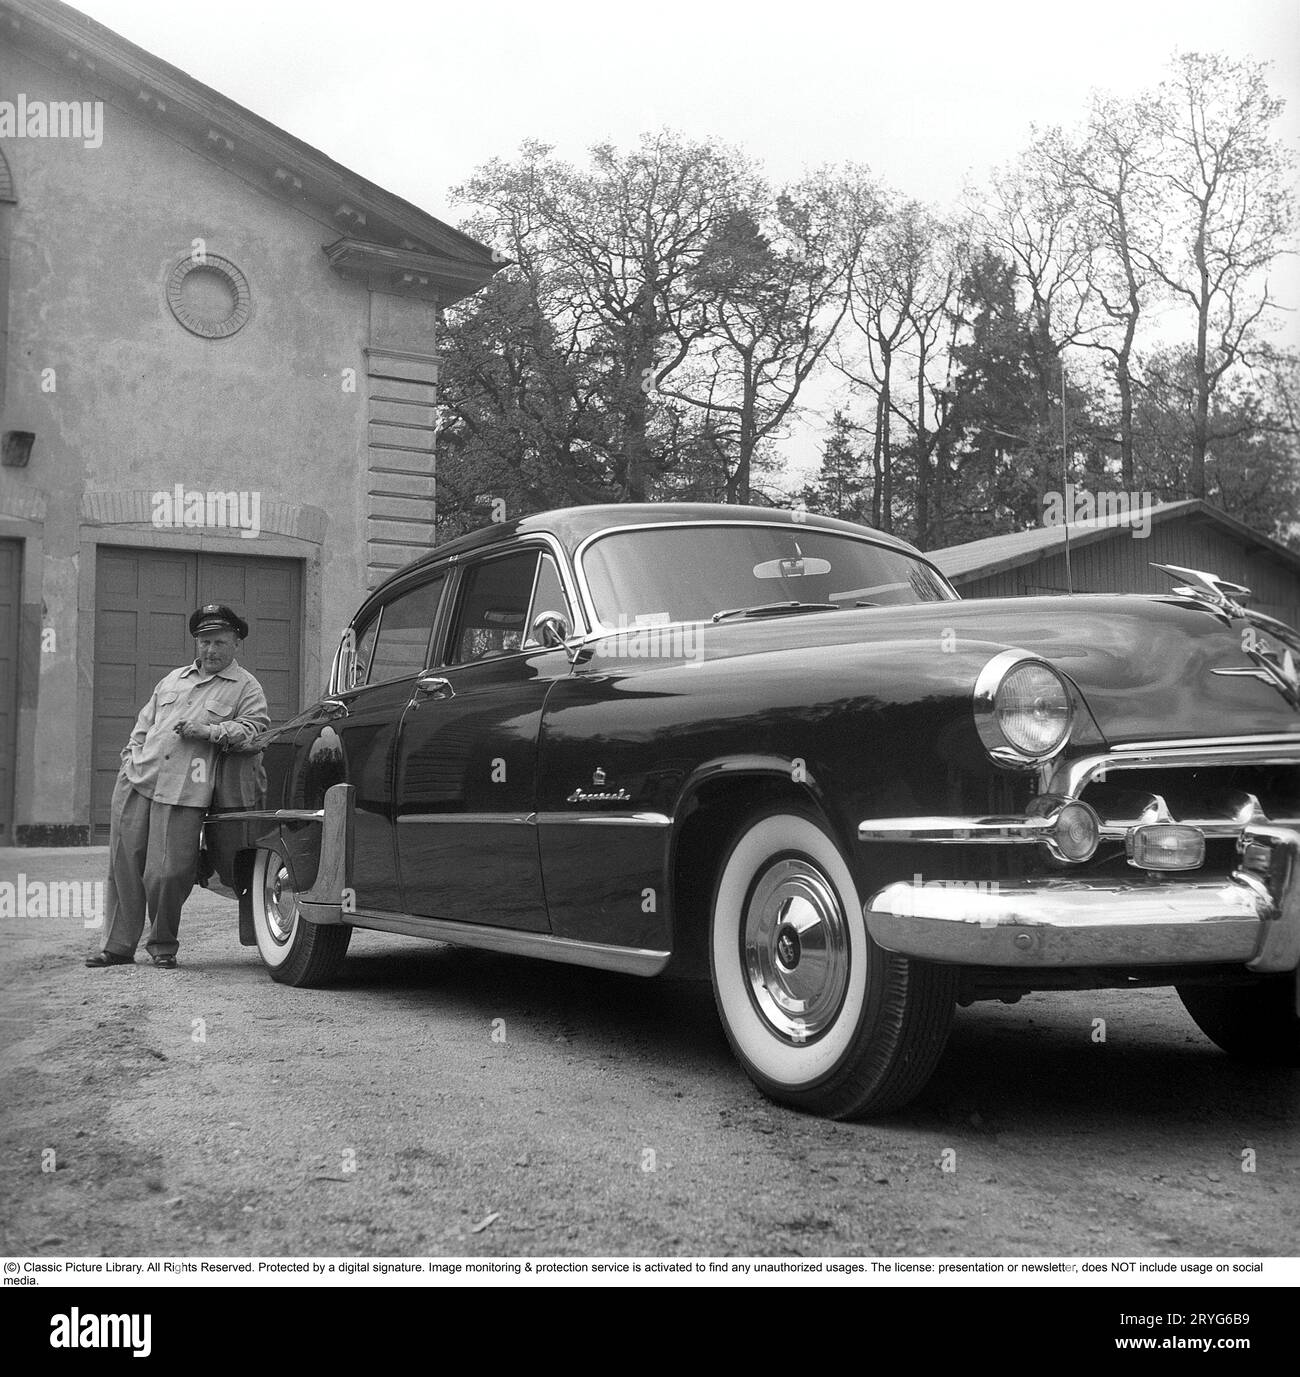 Negli anni '1950 Un uomo vicino alla sua auto ed è visibilmente orgoglioso e forse un po' arrogante. Forse non così strano come è il proprietario di un'impressionante auto americana del marchio Chrysler Imperial. Negli anni '1950, molti dettagli sono stati cromati: griglia, paraurti, modanature. Svezia 1951. Kristoffersson rif. BP31-4 Foto Stock